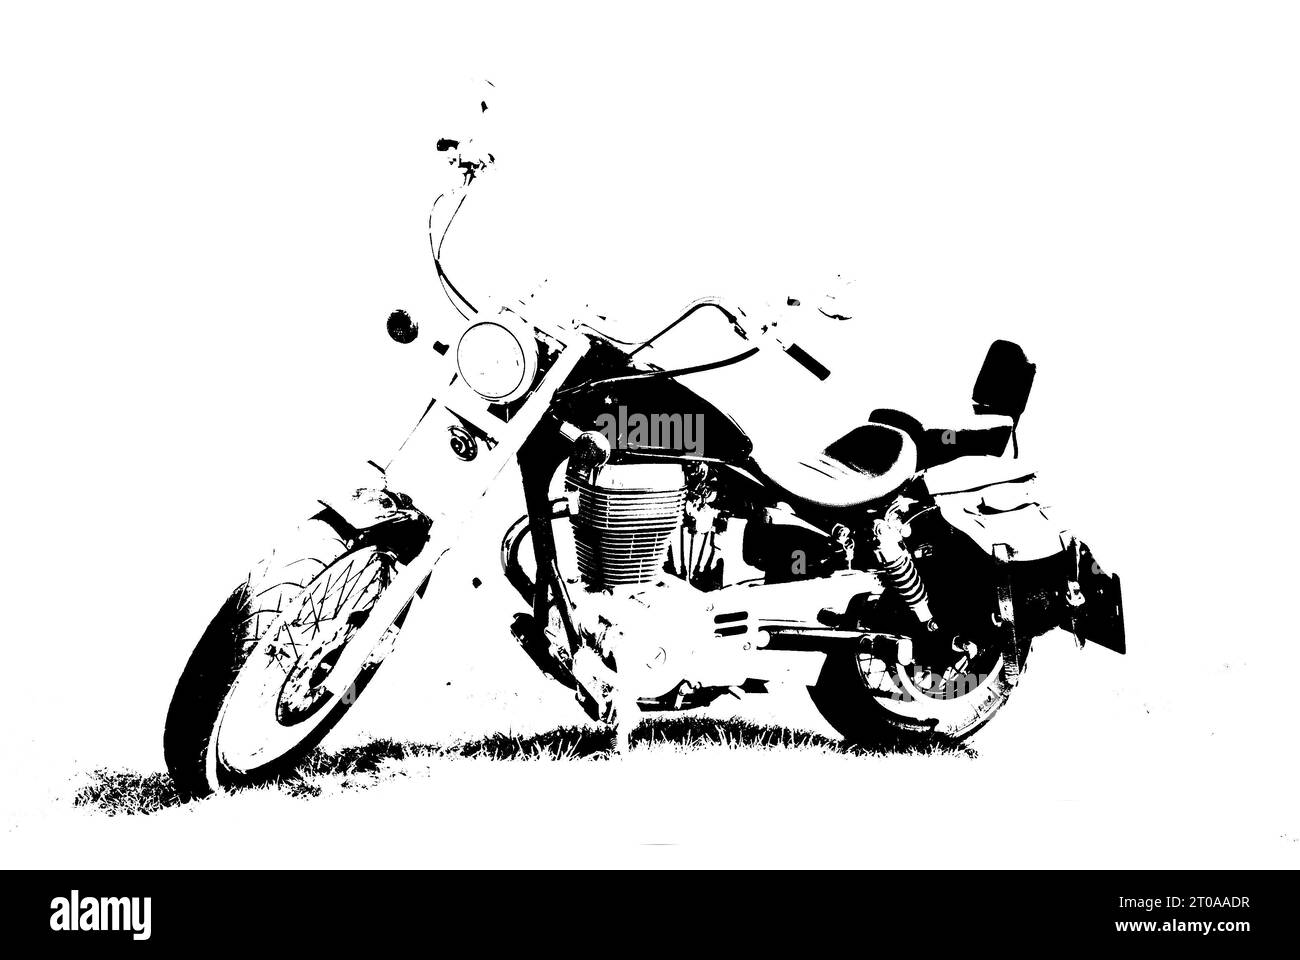 Vintage oldfashioned motorbike, chopper style. Black and white graffiti style illustration. Stock Photo